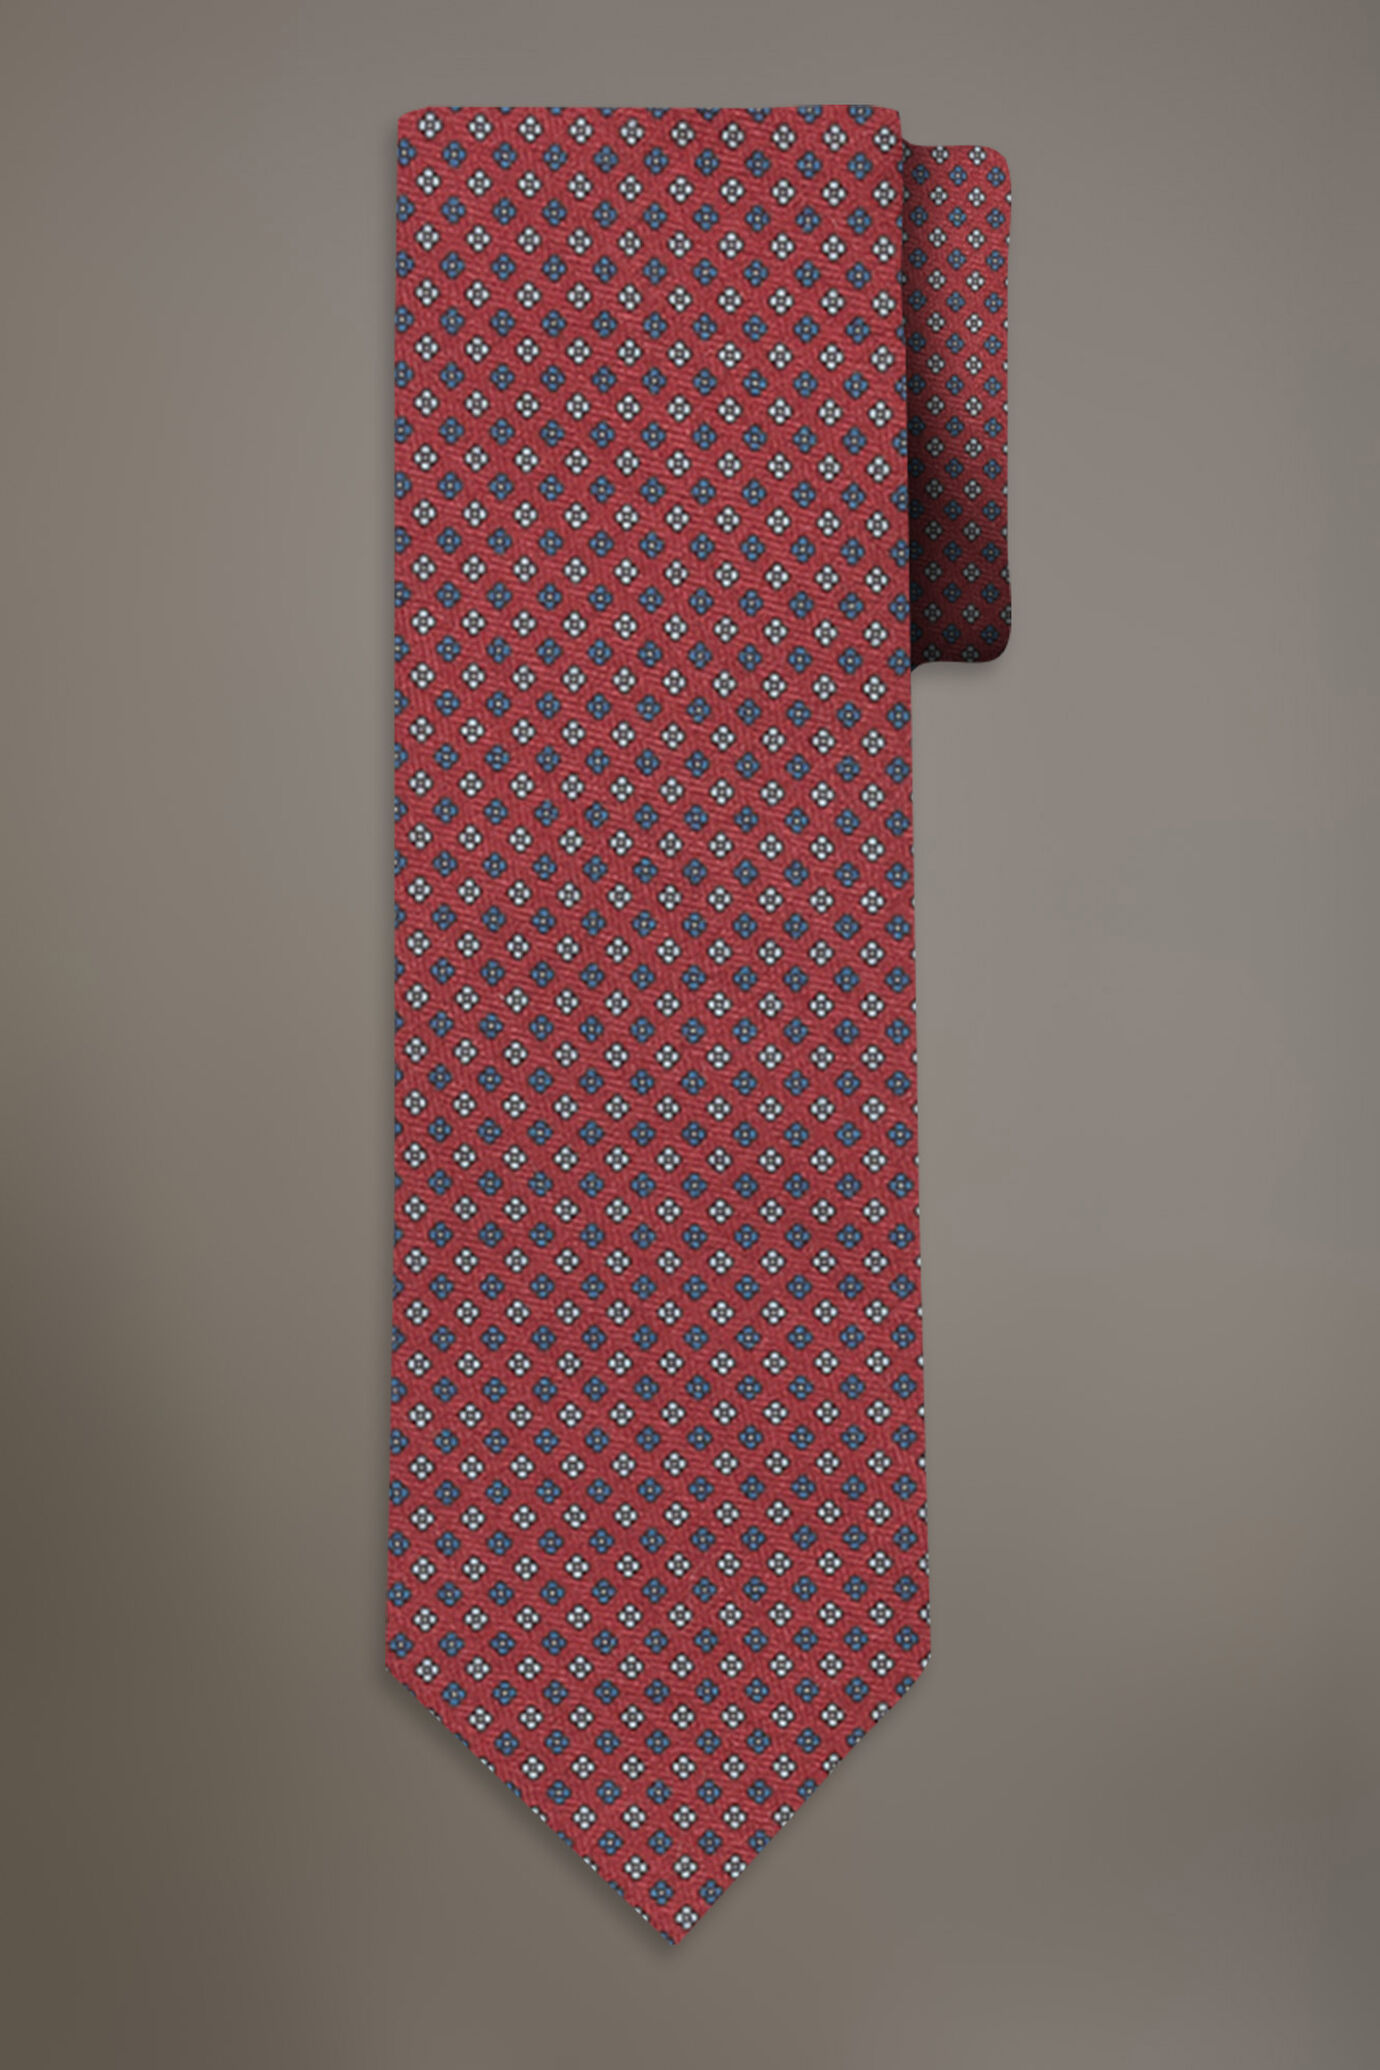 Cravatta mano lana fantasia stampata